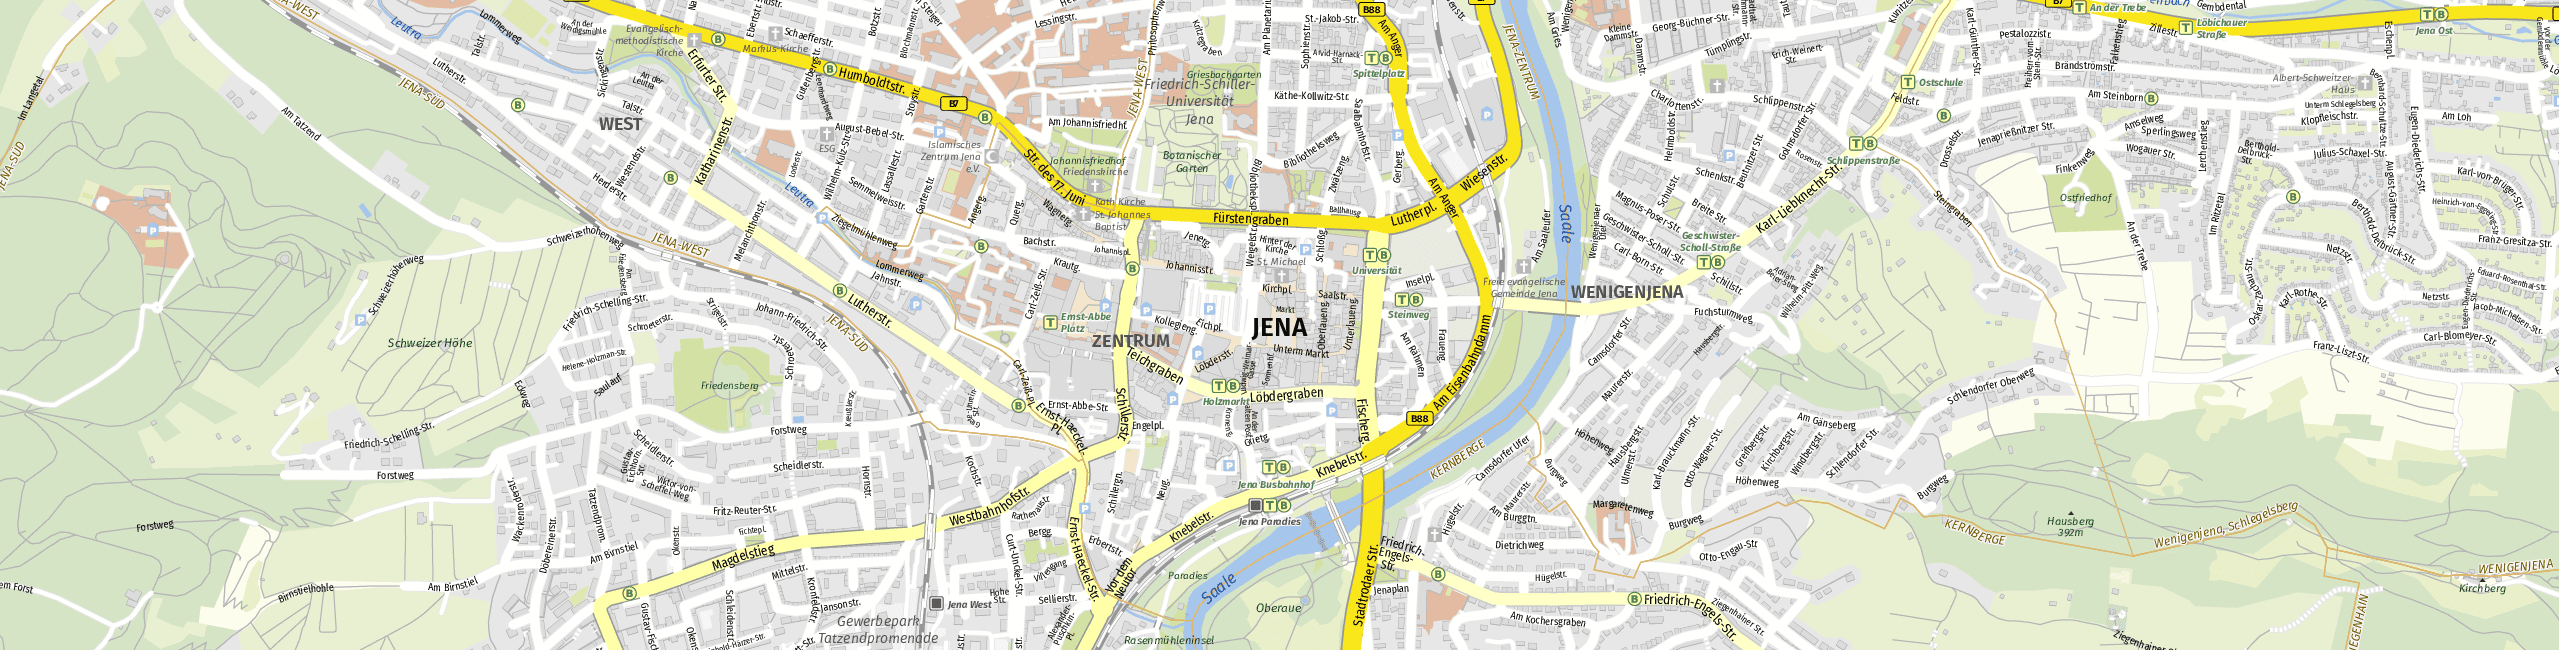 Stadtplan Jena zum Downloaden.